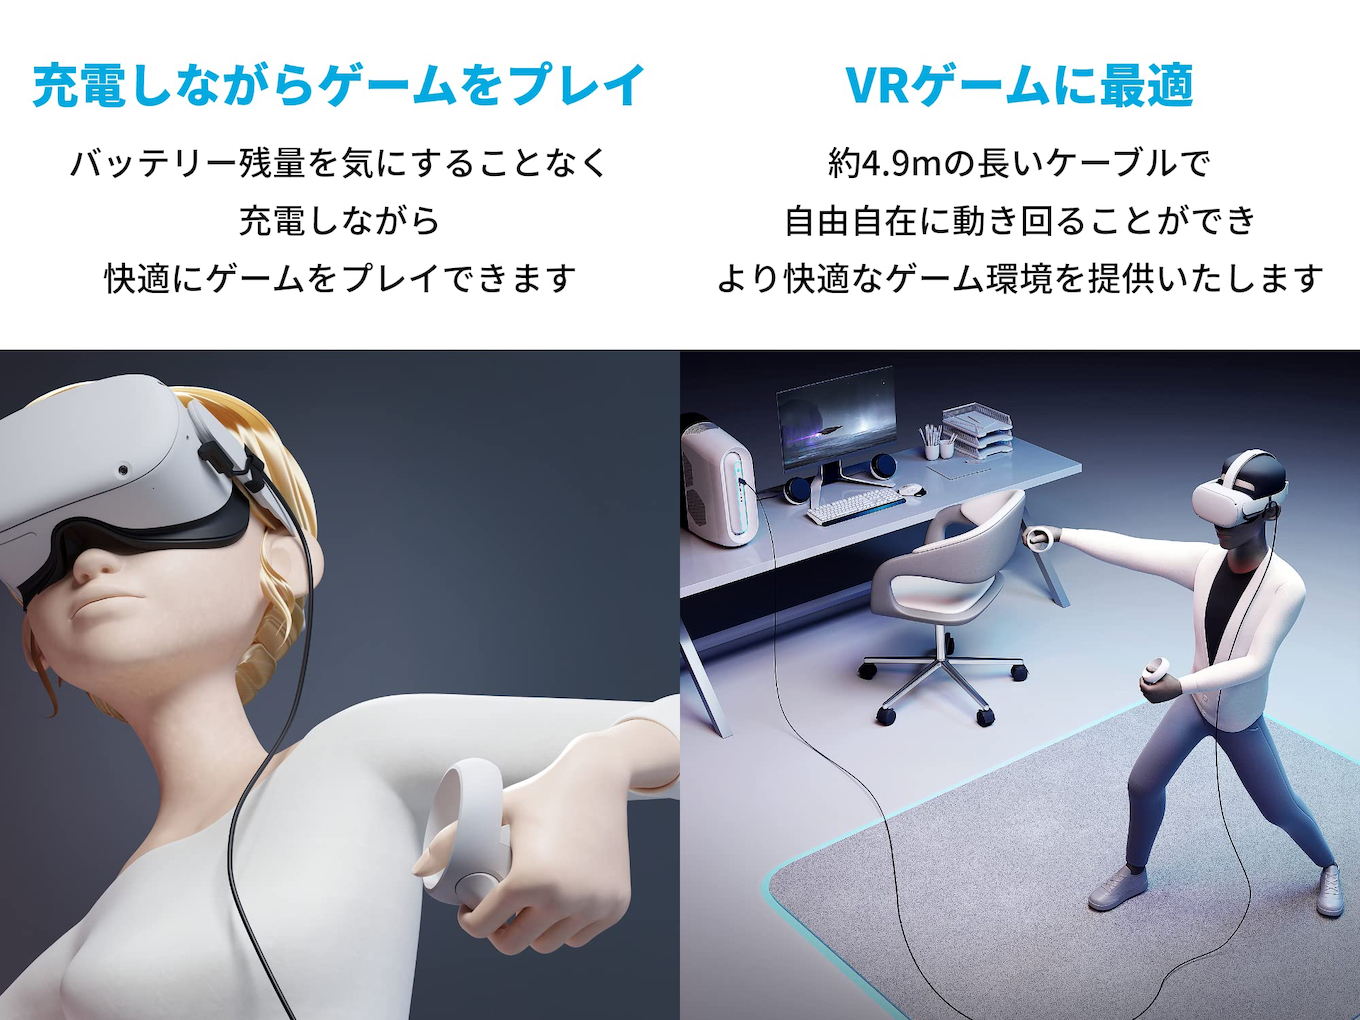 Anker Japan、光ファイバーコアを採用しOculus Quest 2 VRヘッドセット 